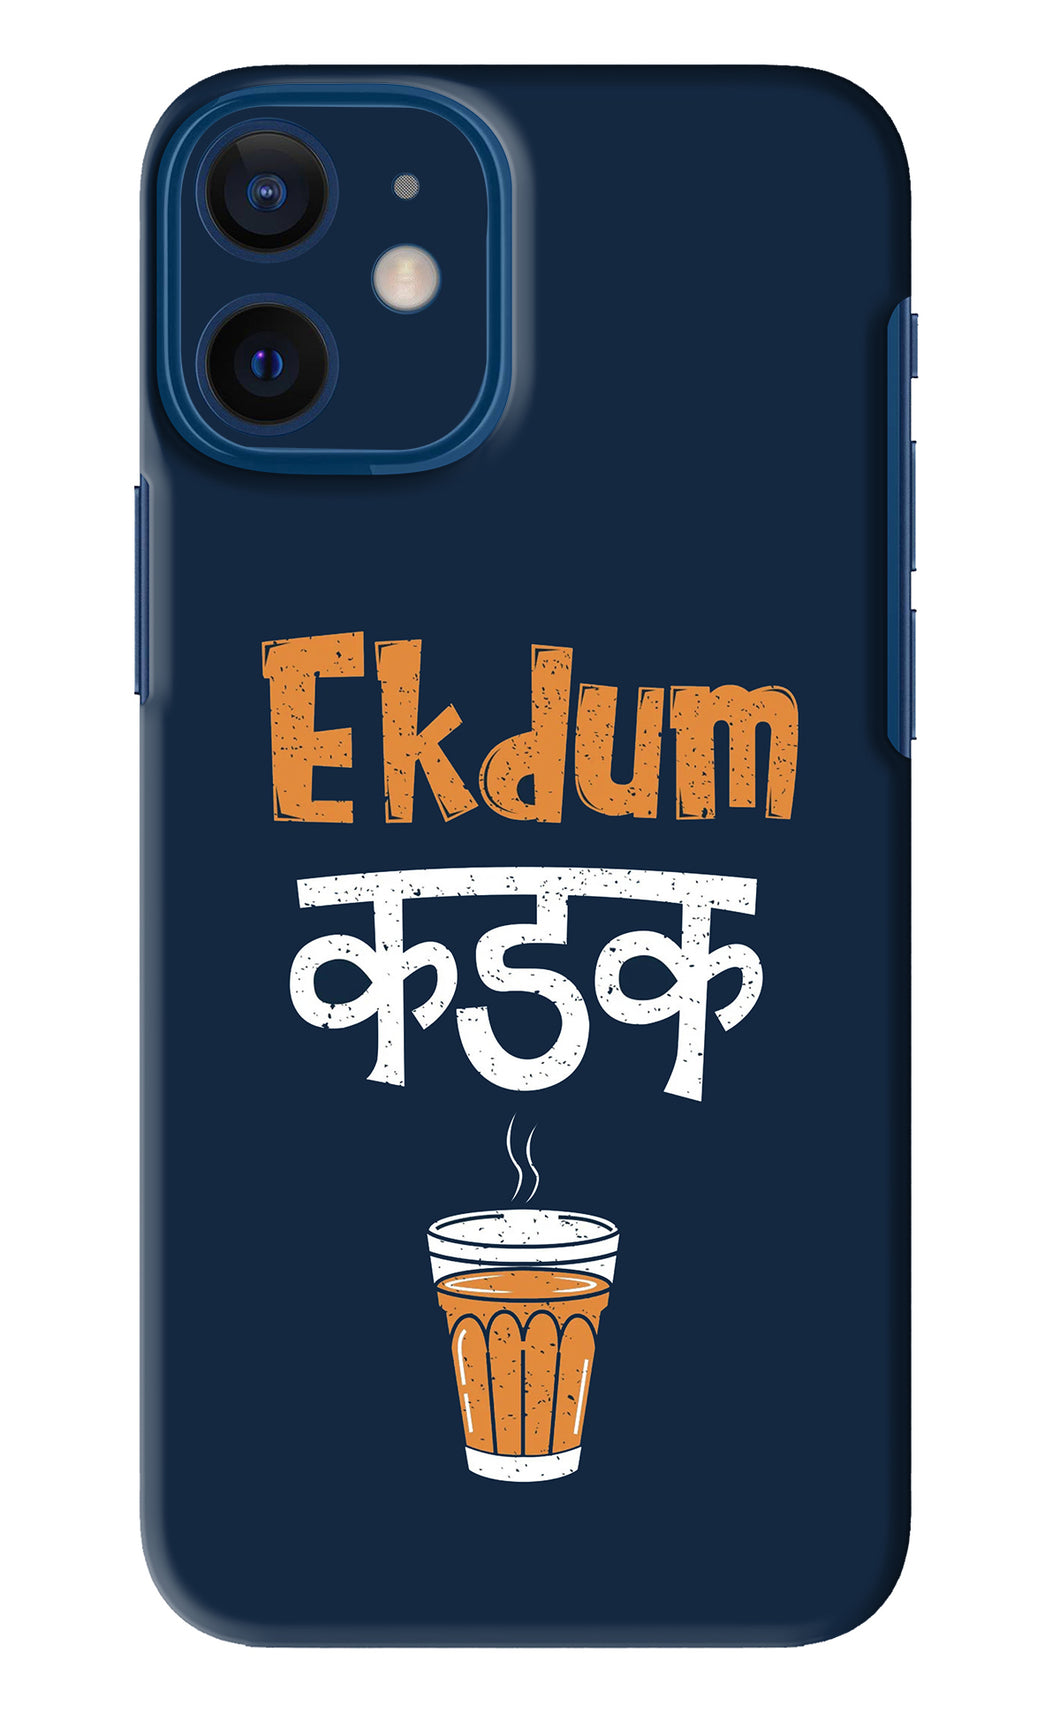 Ekdum Kadak Chai iPhone 12 Mini Back Skin Wrap